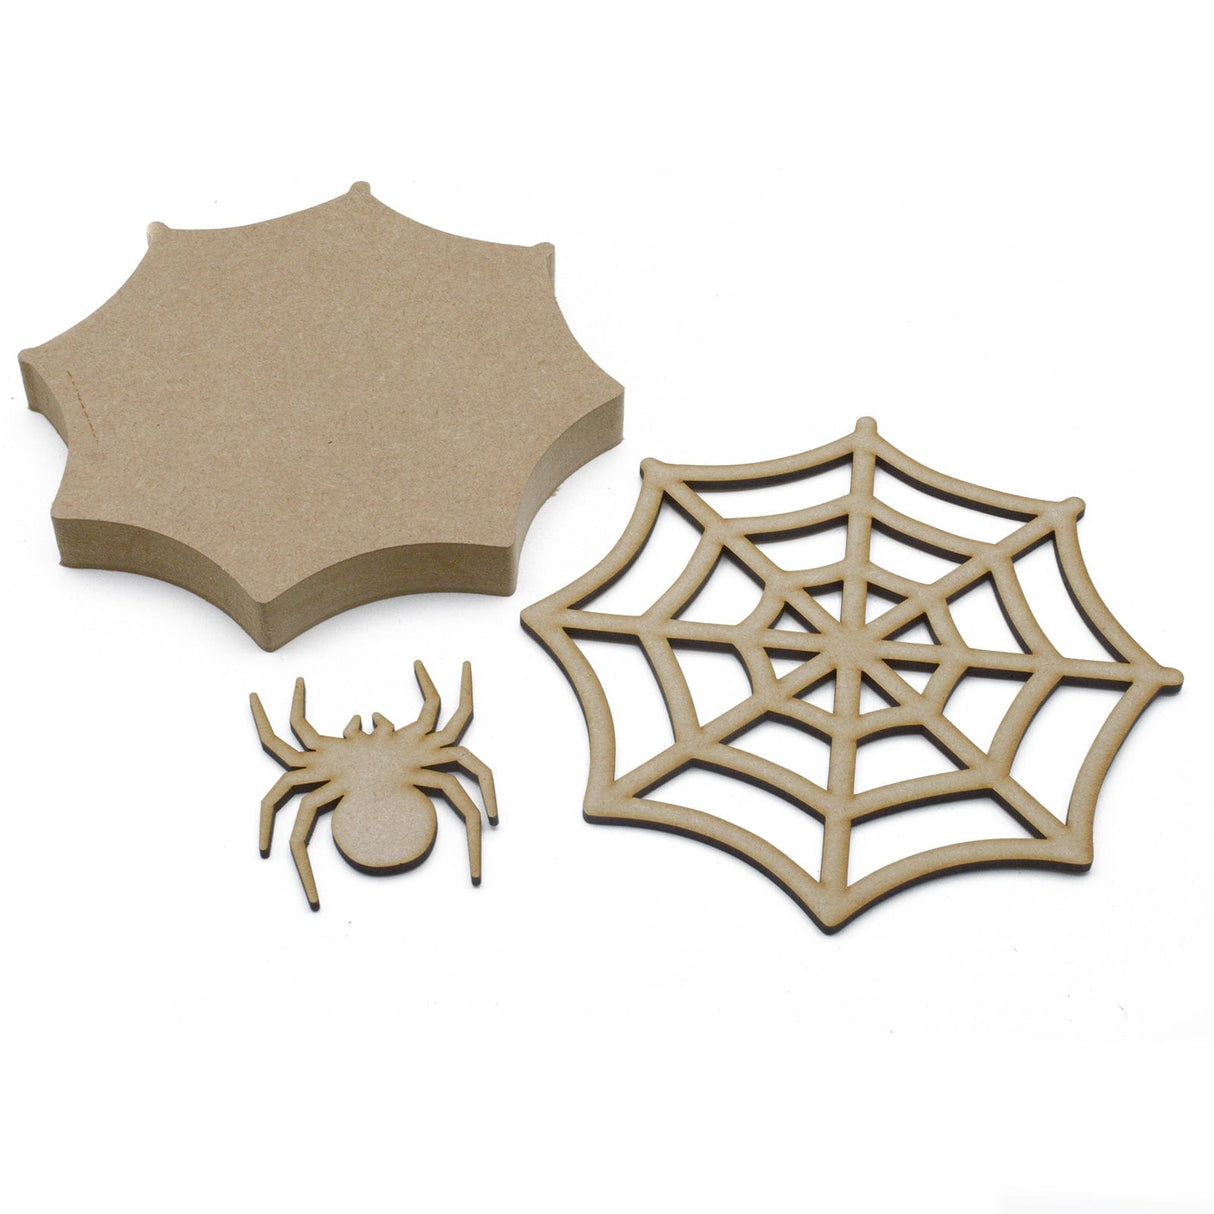 Freestanding 3D Spider Web & Spider Halloween Decoration - Laserworksuk